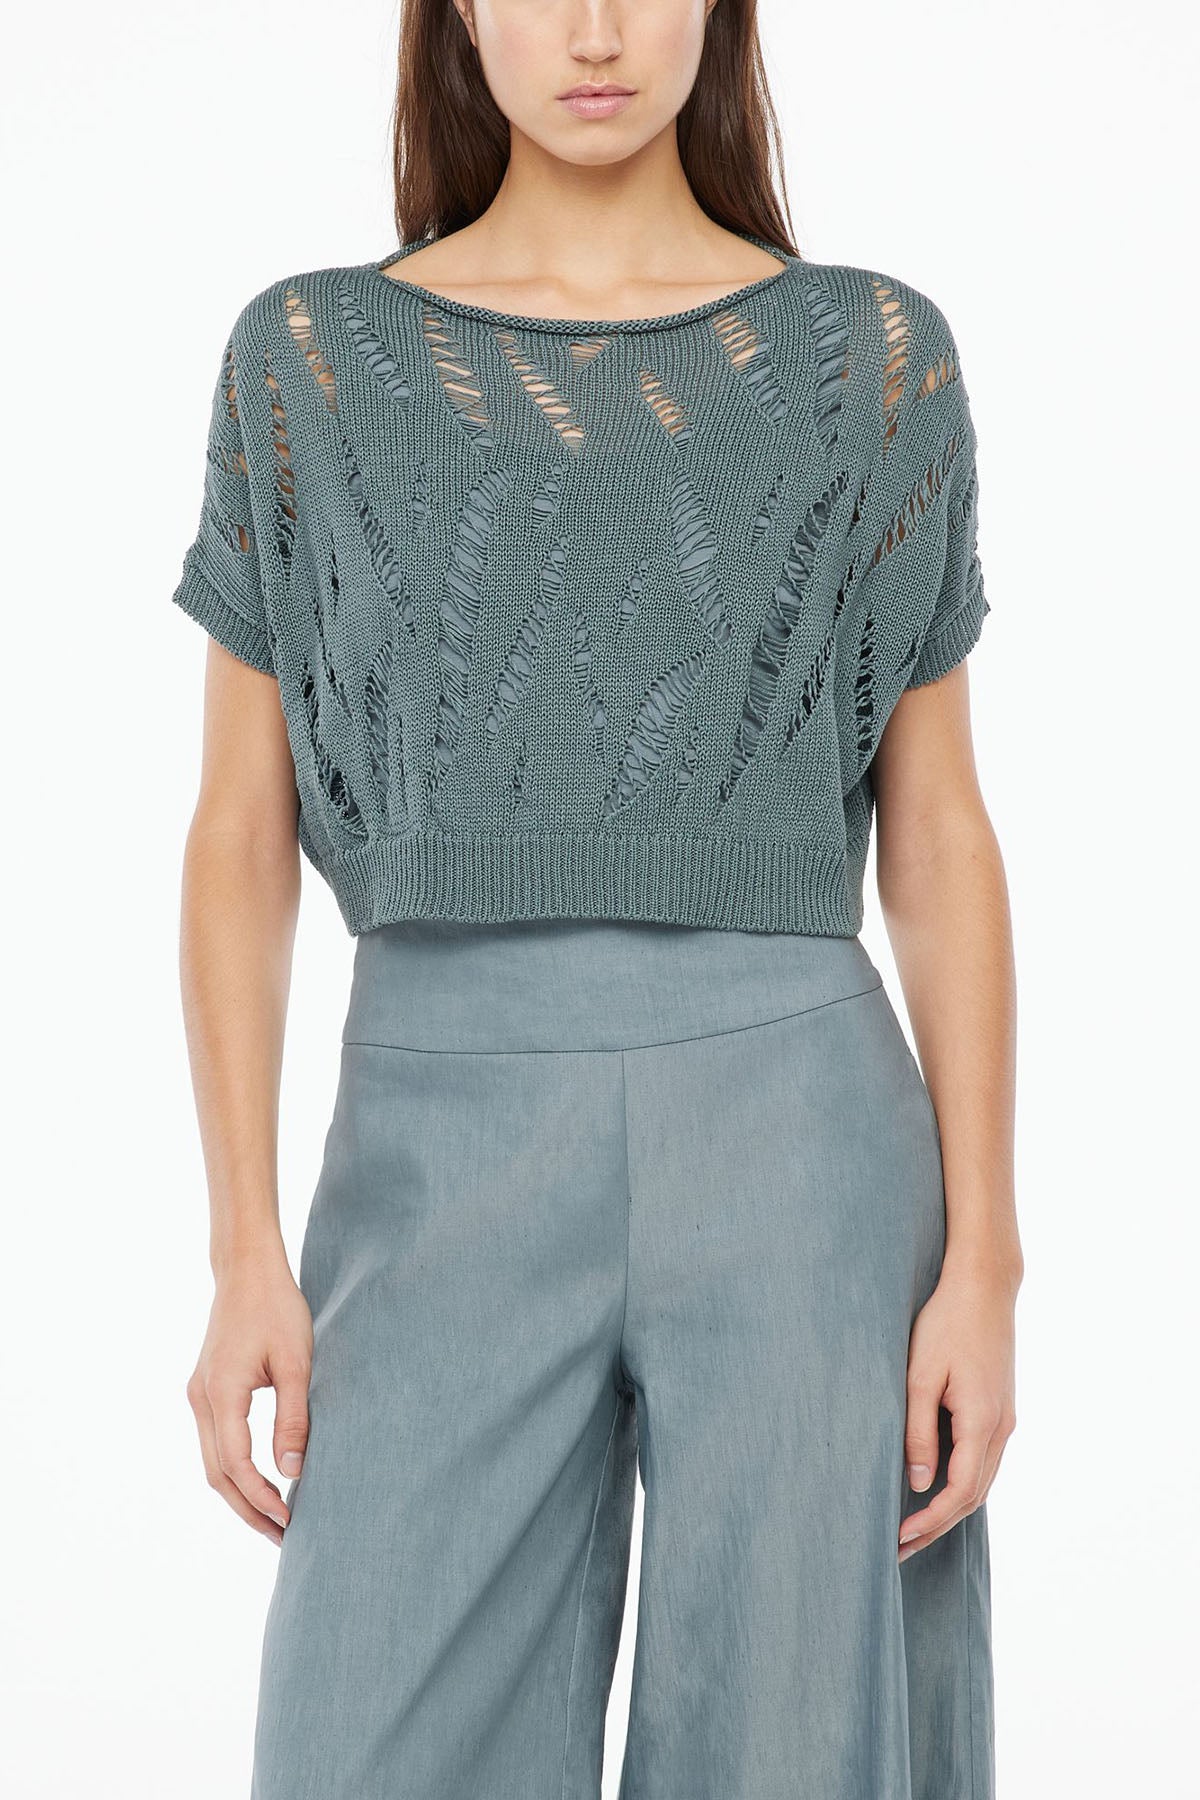 Sarah Pacini Geniş Kesim Crop Örme Bluz-Libas Trendy Fashion Store